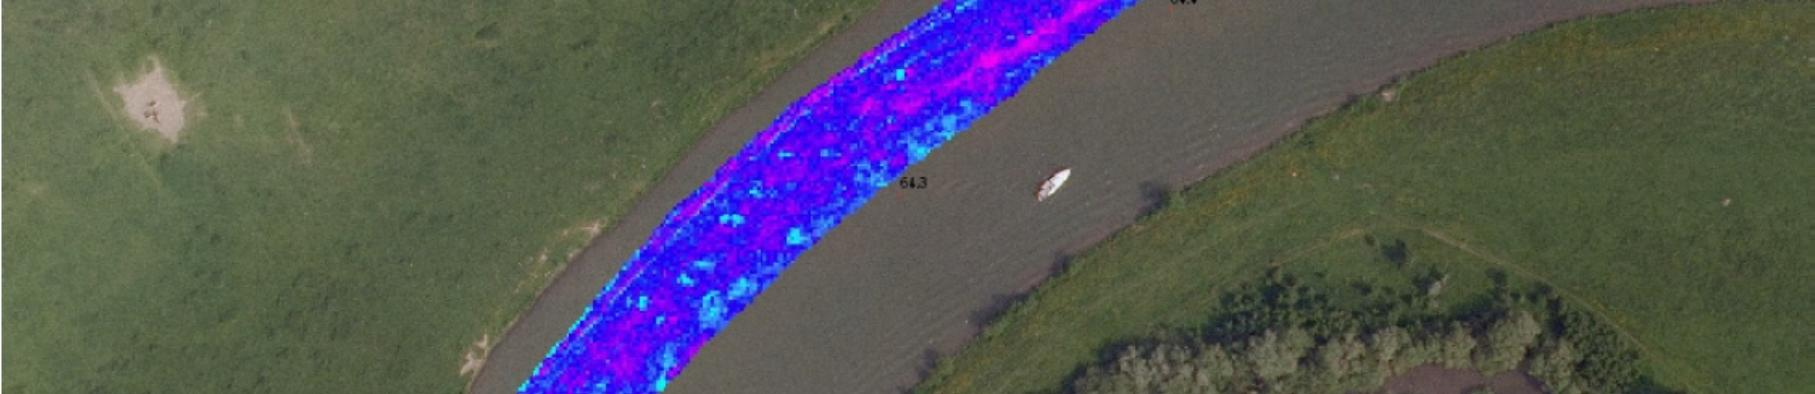 De karteringen in het veld, uitgevoerd door Bureau Drift, en de fotovluchten vullen elkaar dan ook aan en geven een compleet beeld van de locatie.